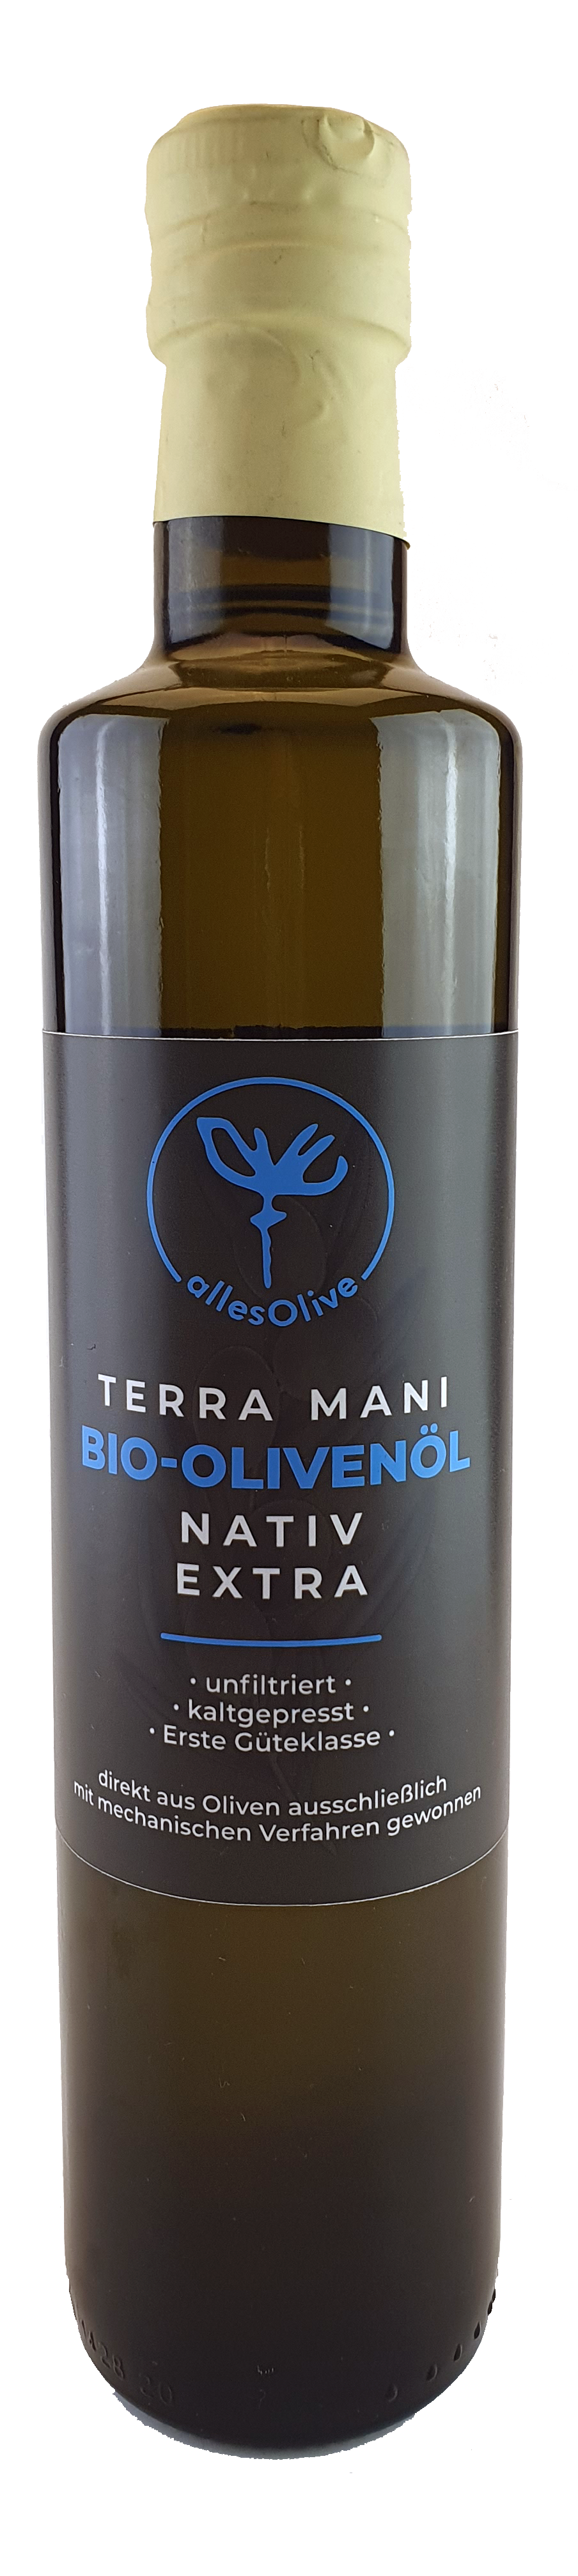 Olio extra vergine di oliva biologico nativo TERRA-MANI, non filtrato, bottiglia da 500 ml.